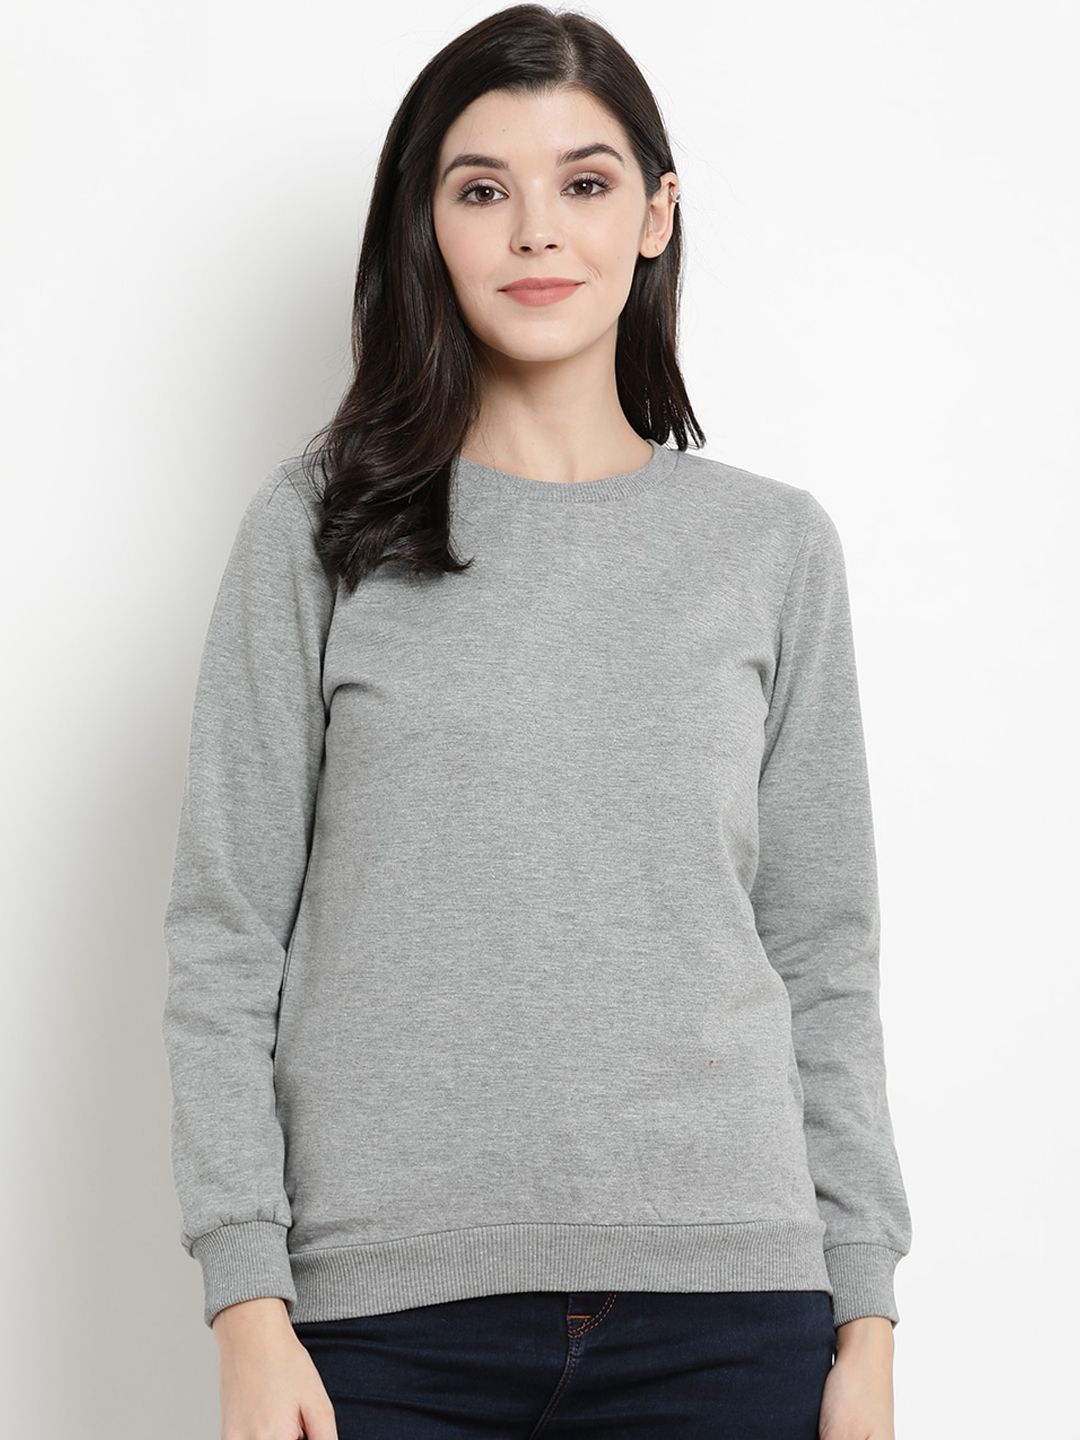 The Vanca Women Grey Solid Sweatshirt Price in India